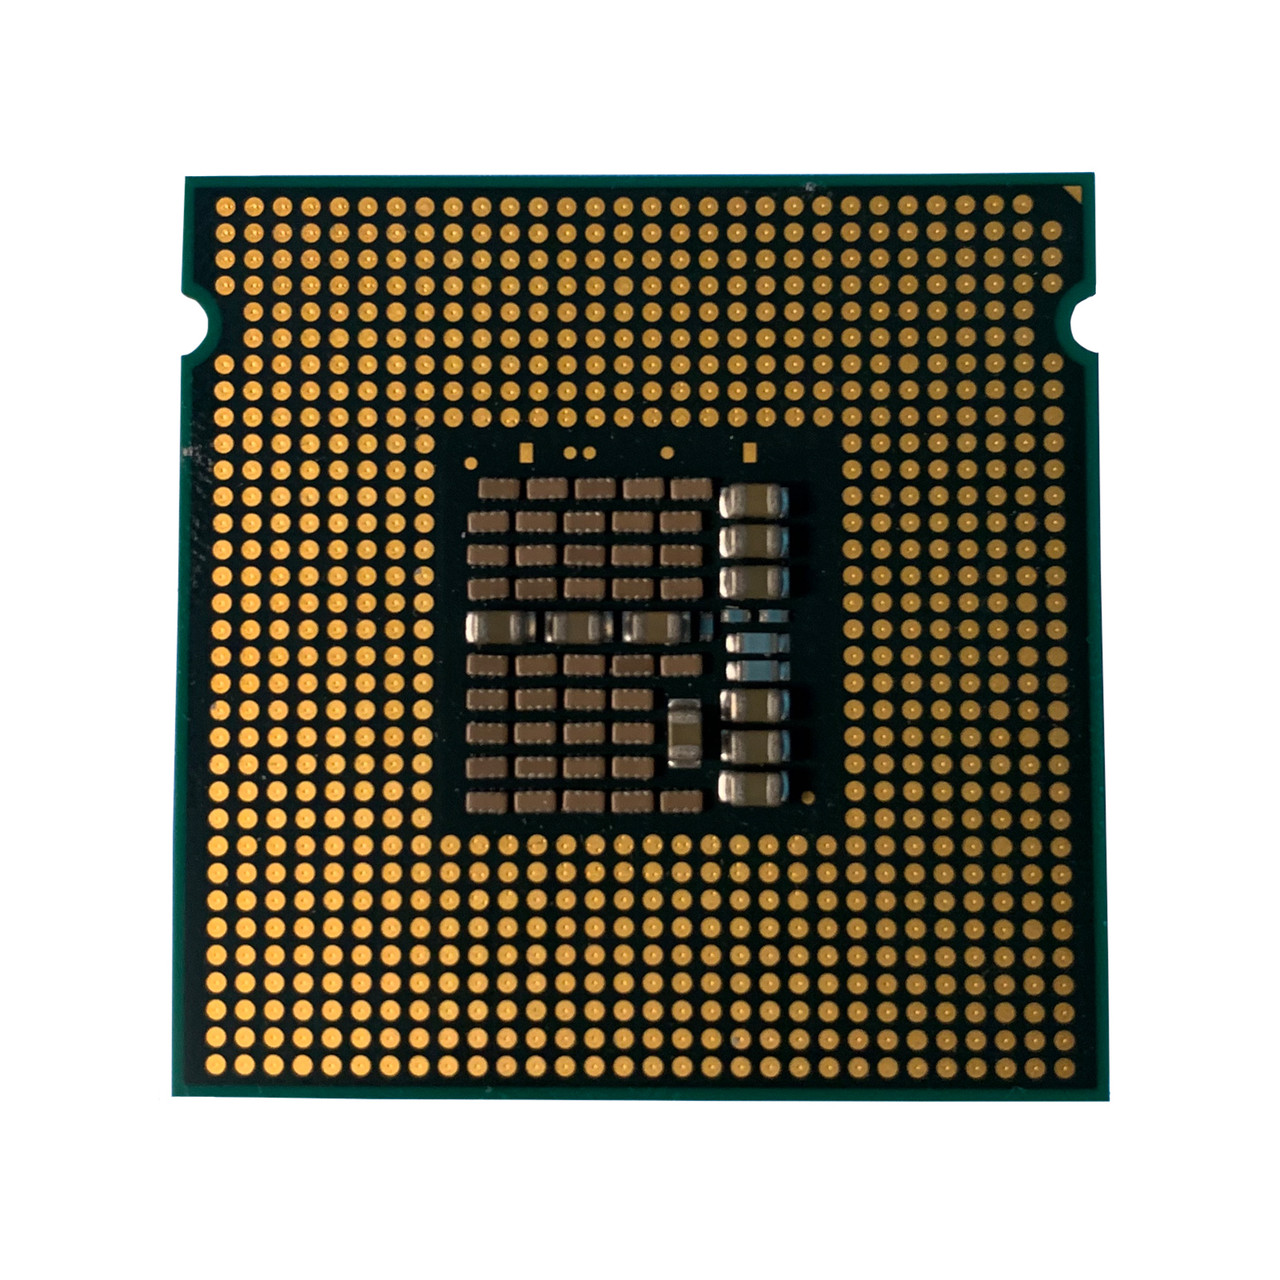 Dell JR942 Xeon 3050 DC 2.13Ghz 2MB 1066FSB Processor